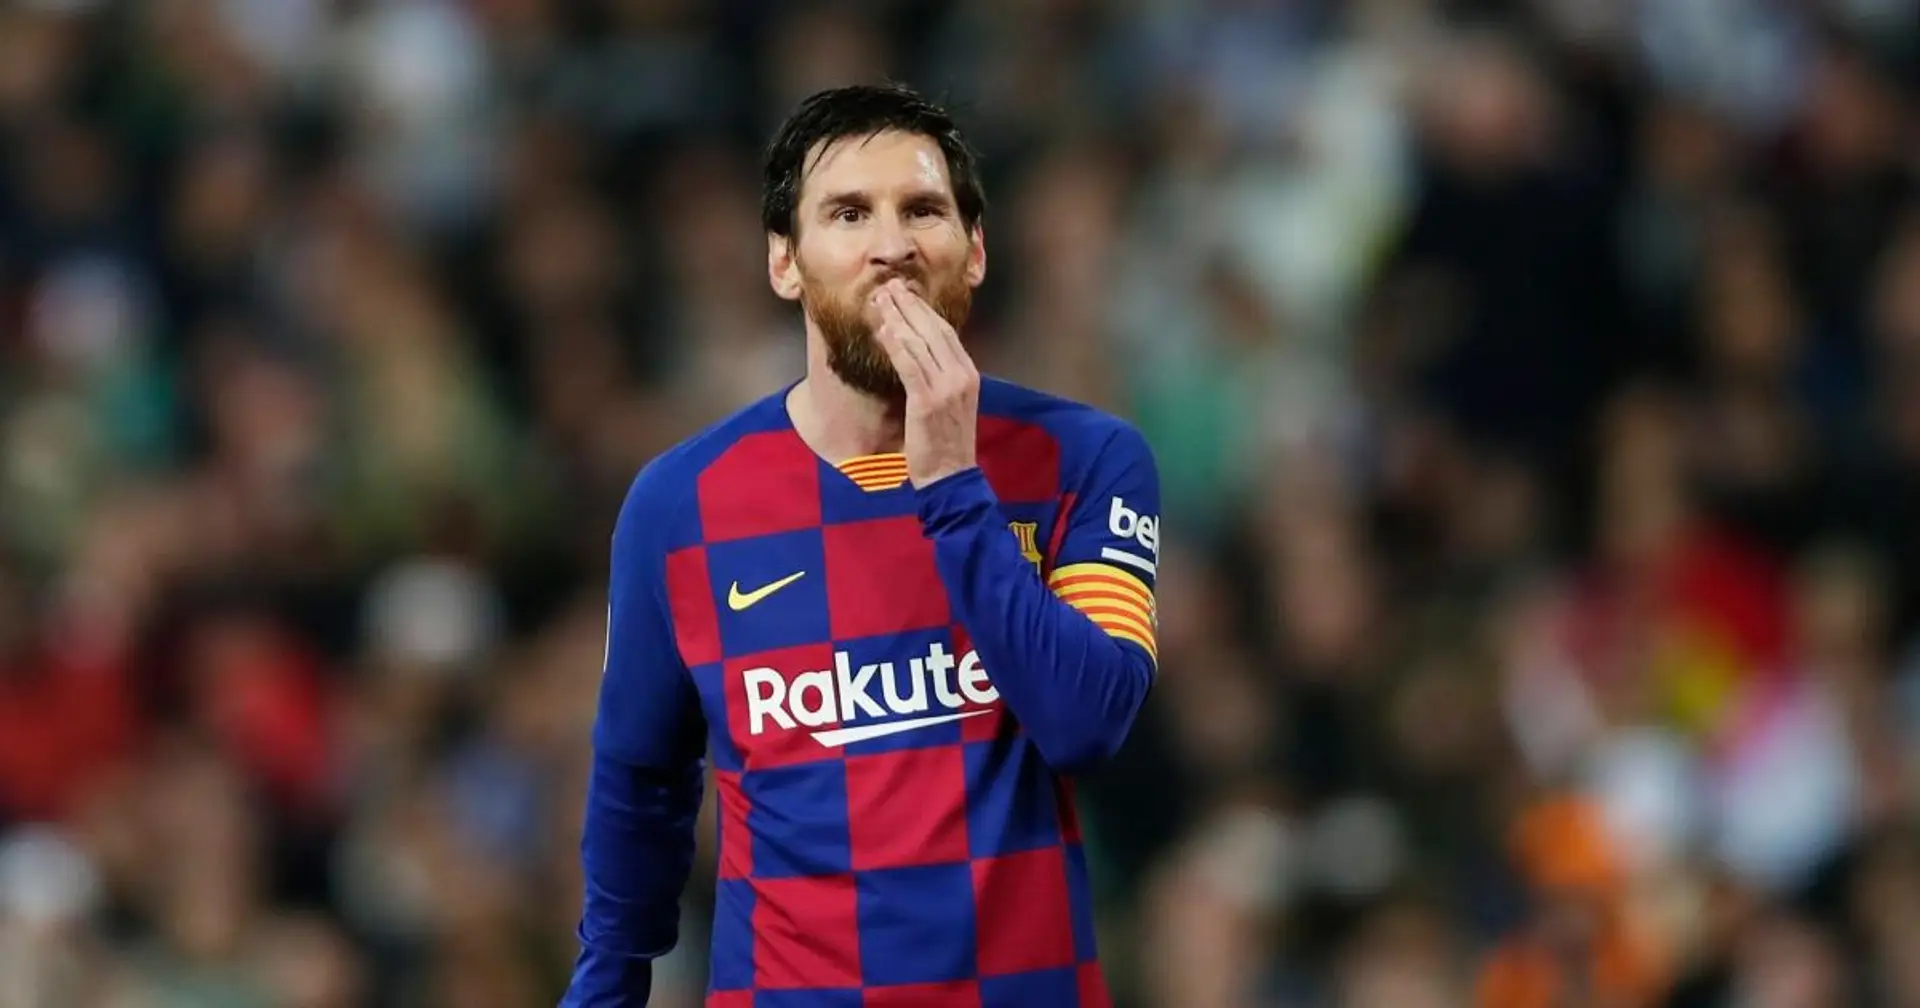 Leo Messi establece récord de penaltis erróneos: más que cualquier otro jugador en este siglo